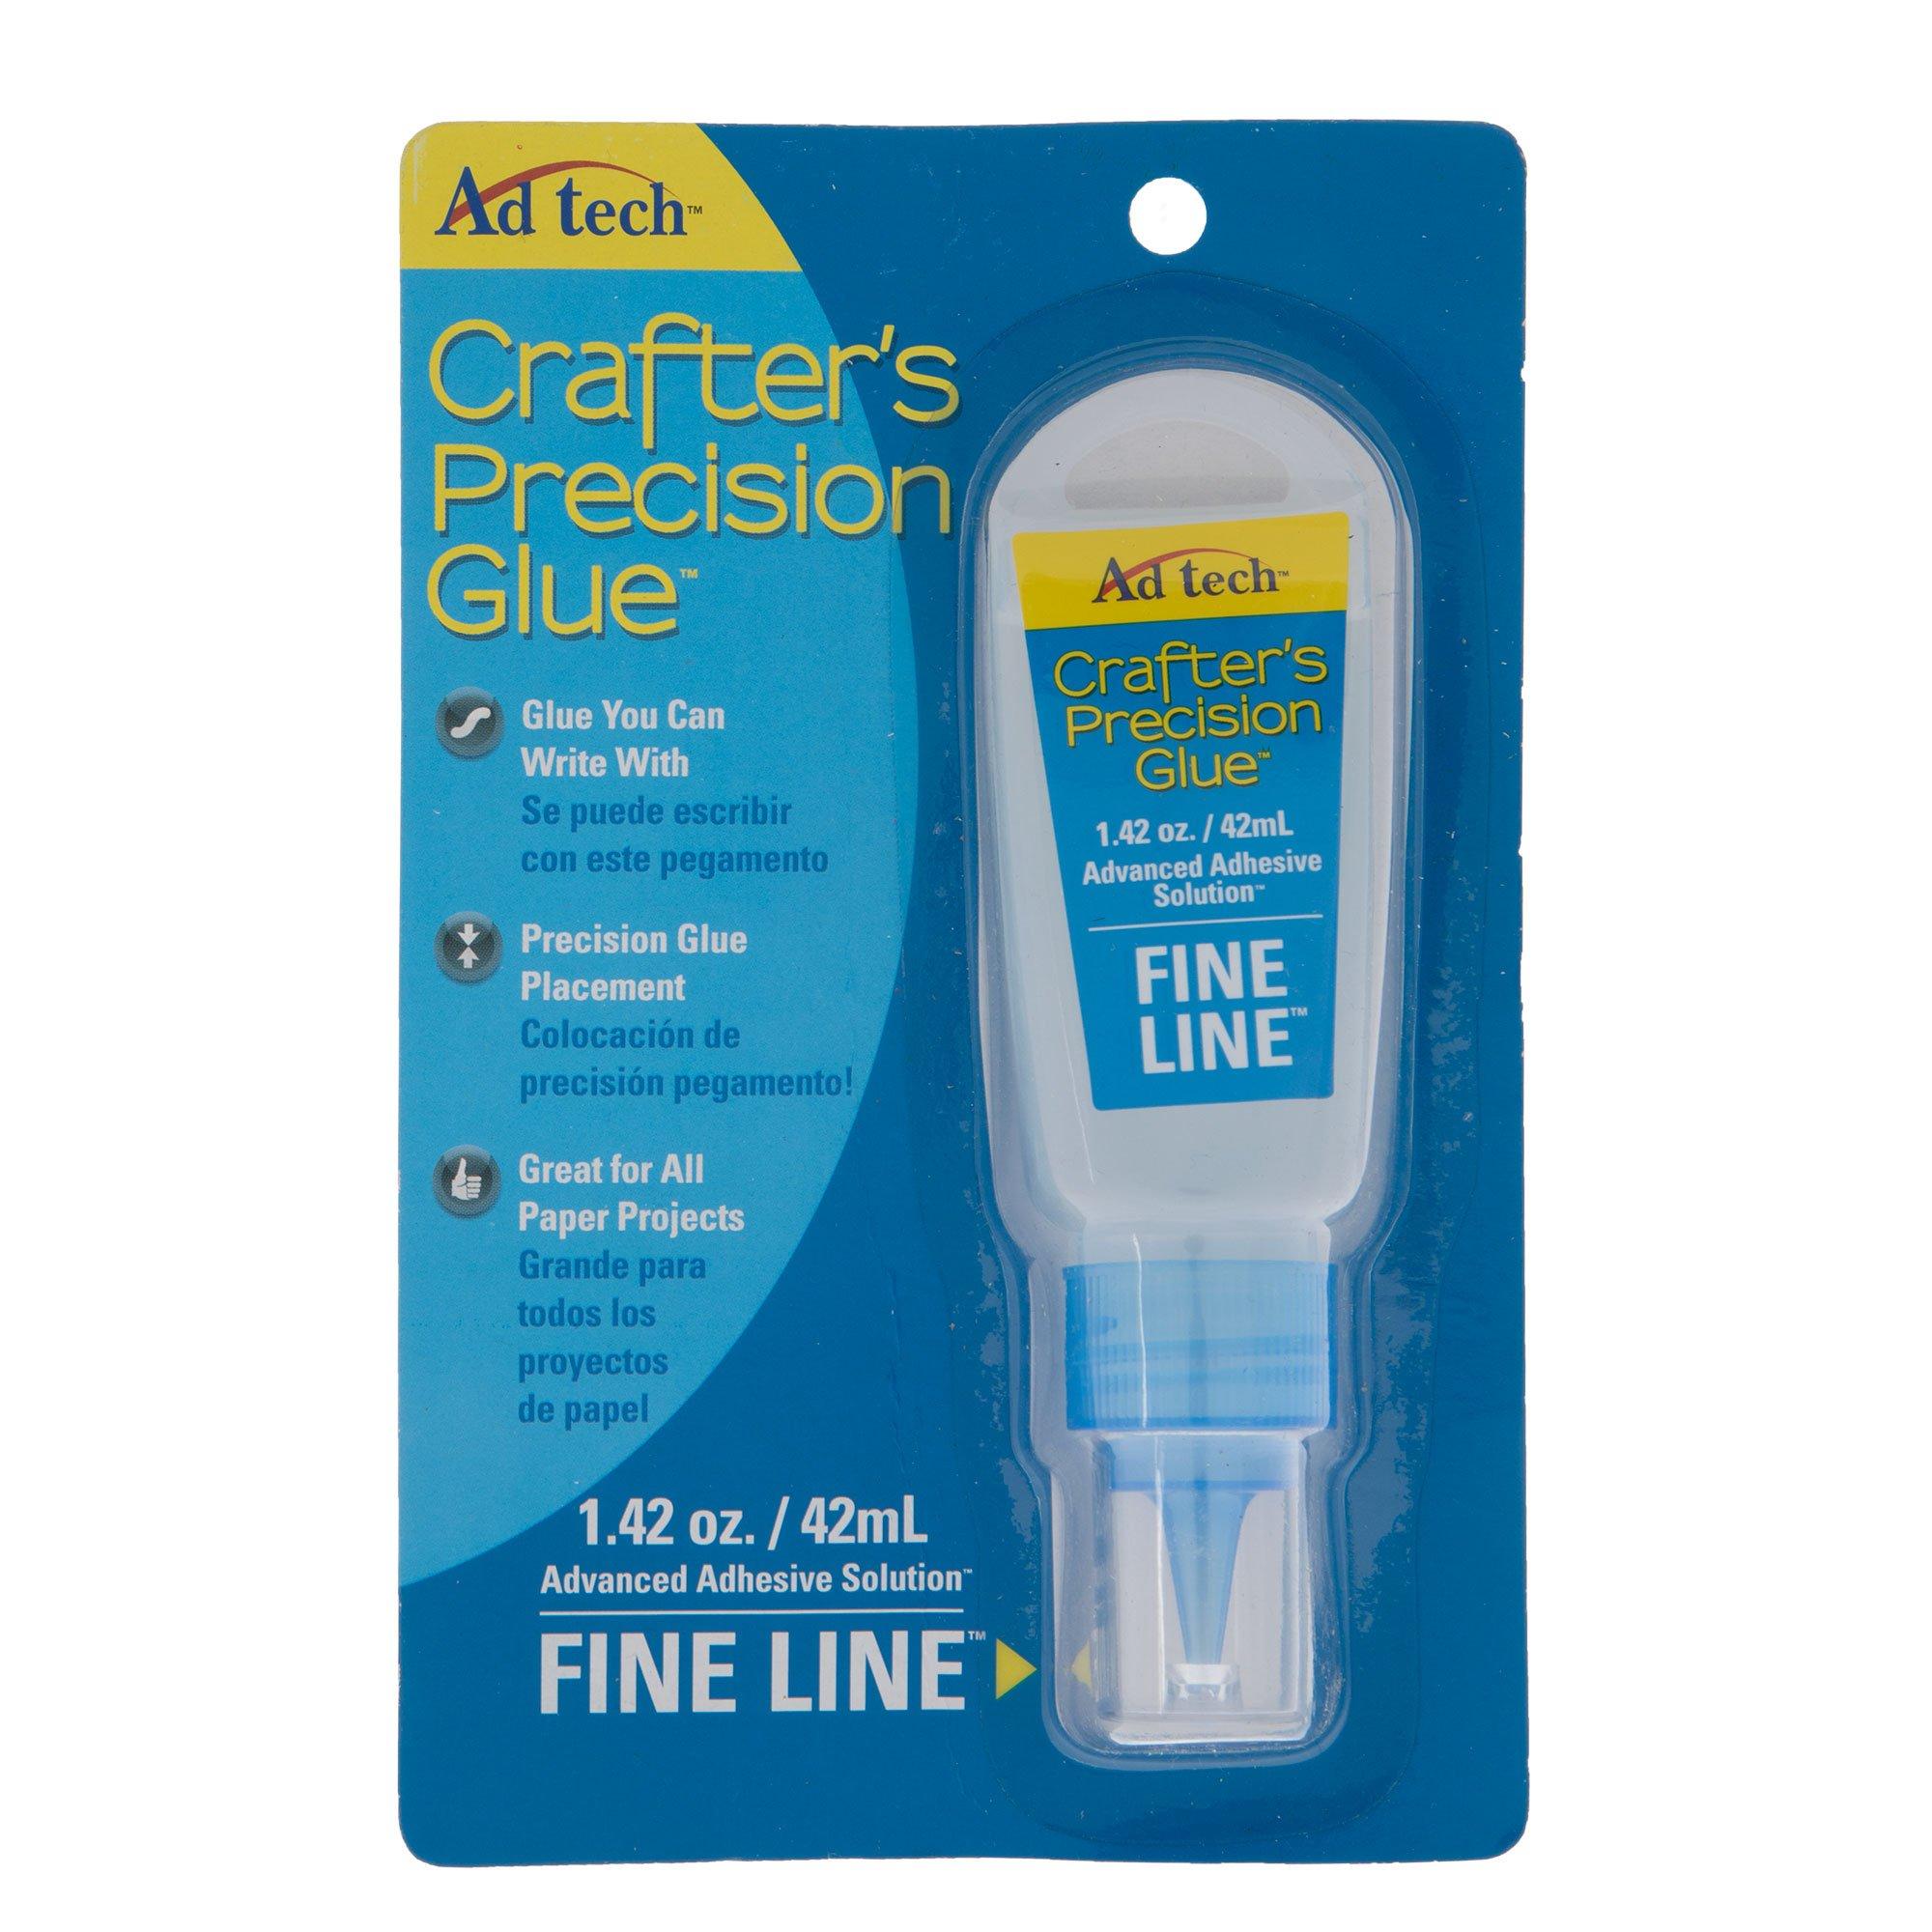  Artis Craft Glue - Perfect for Paper - Precision Tips and  No Clog Pin Bundle - 4 fl oz